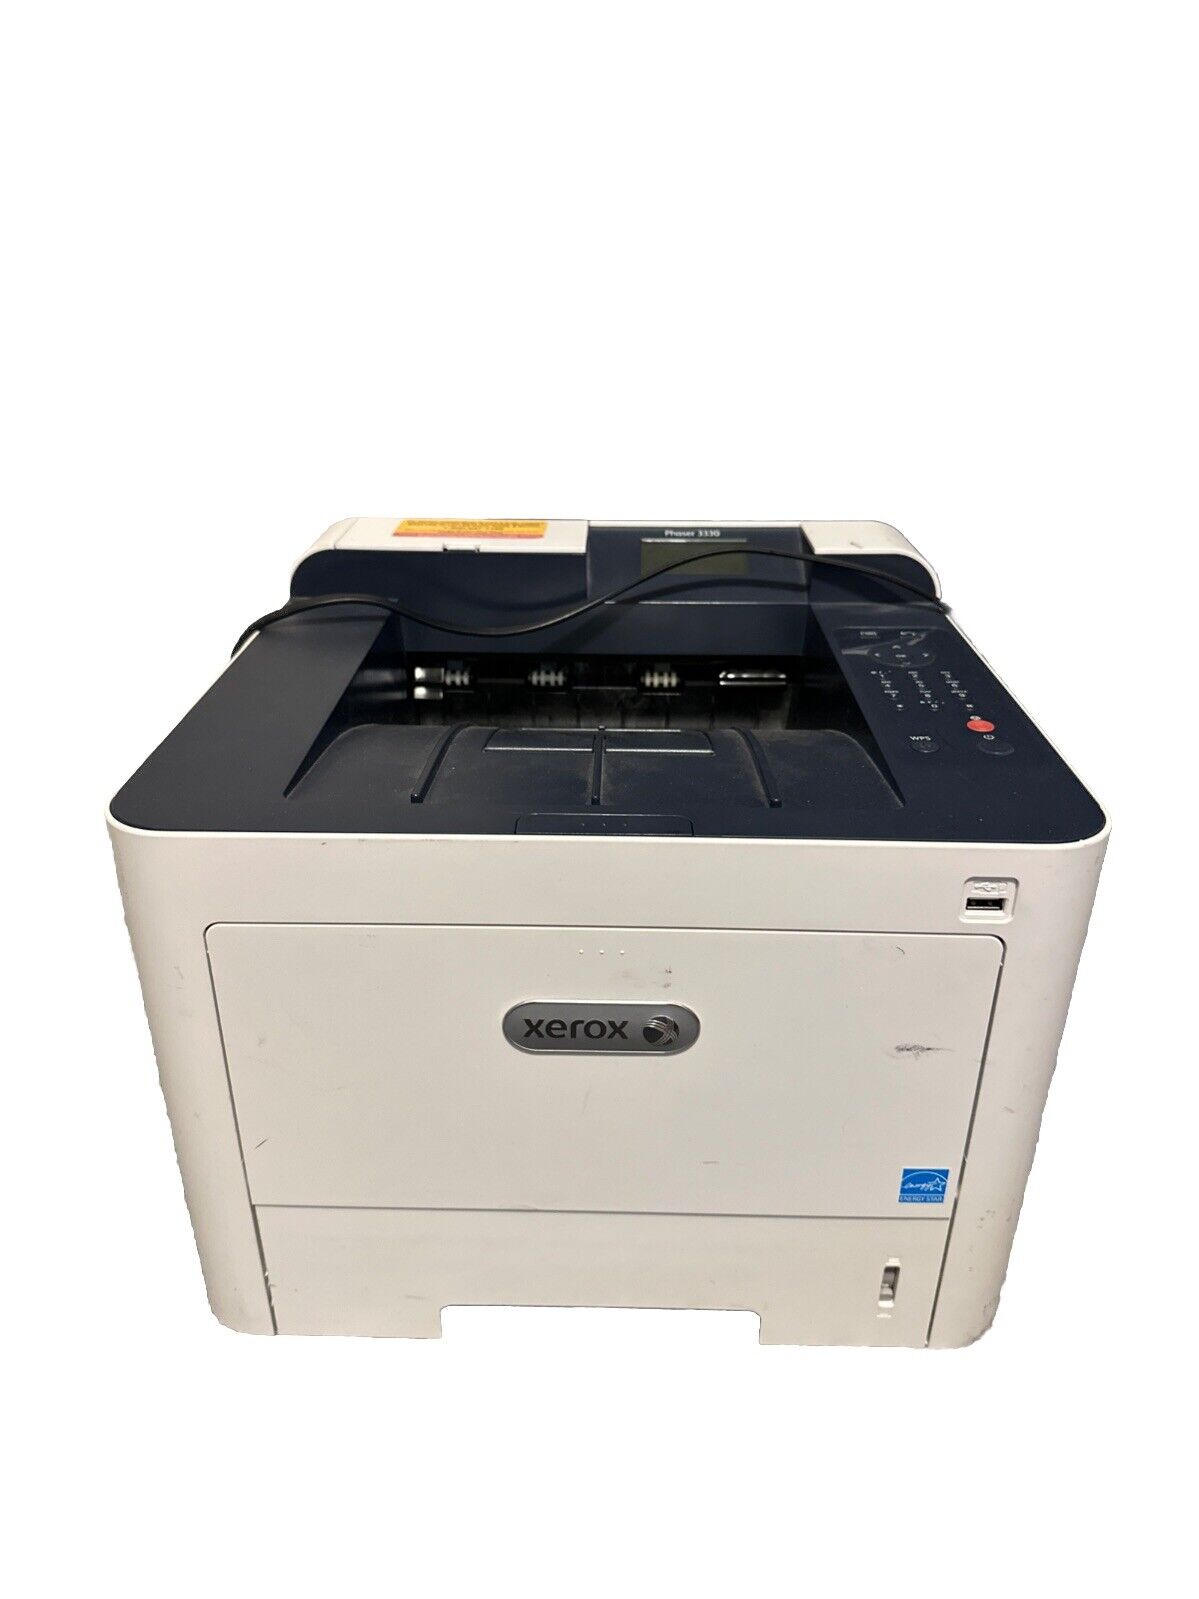 Xerox Phaser 3330DNI Monochrome Laser Printer - White